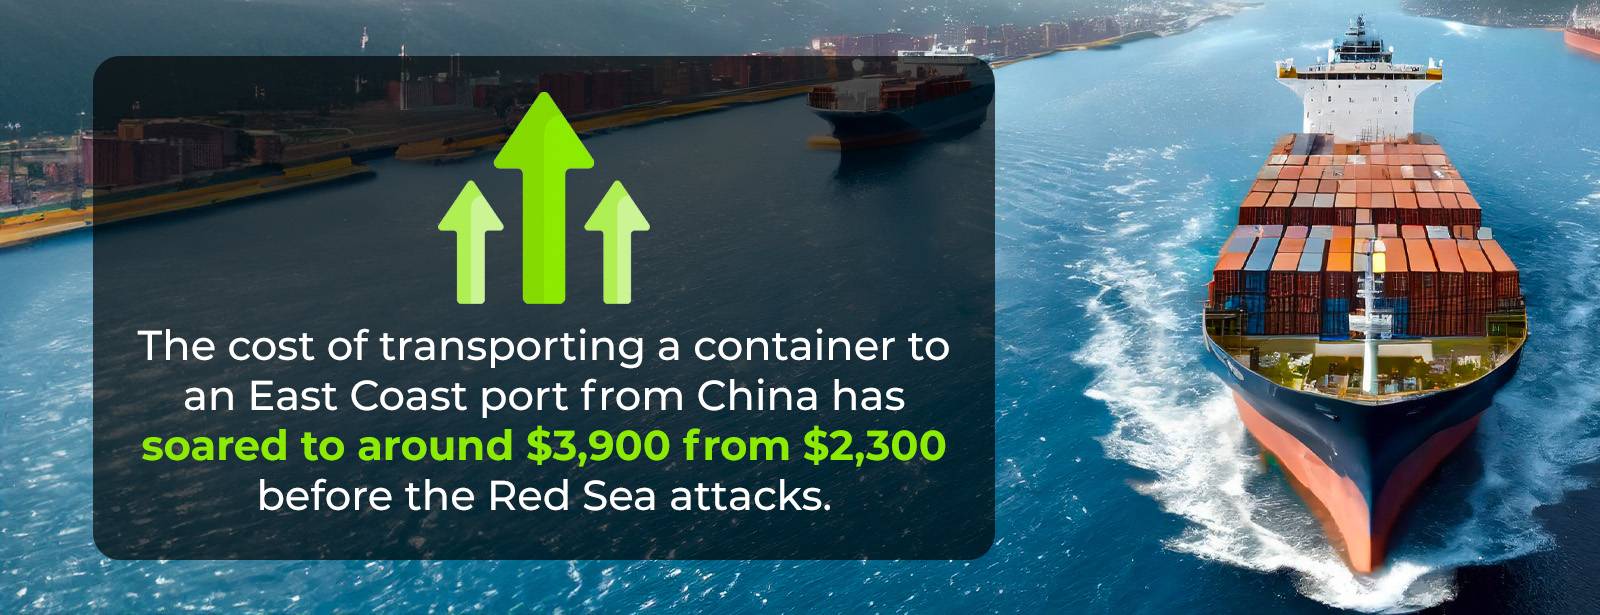 El coste del transporte de un contenedor a través del Mar Rojo se duplica.